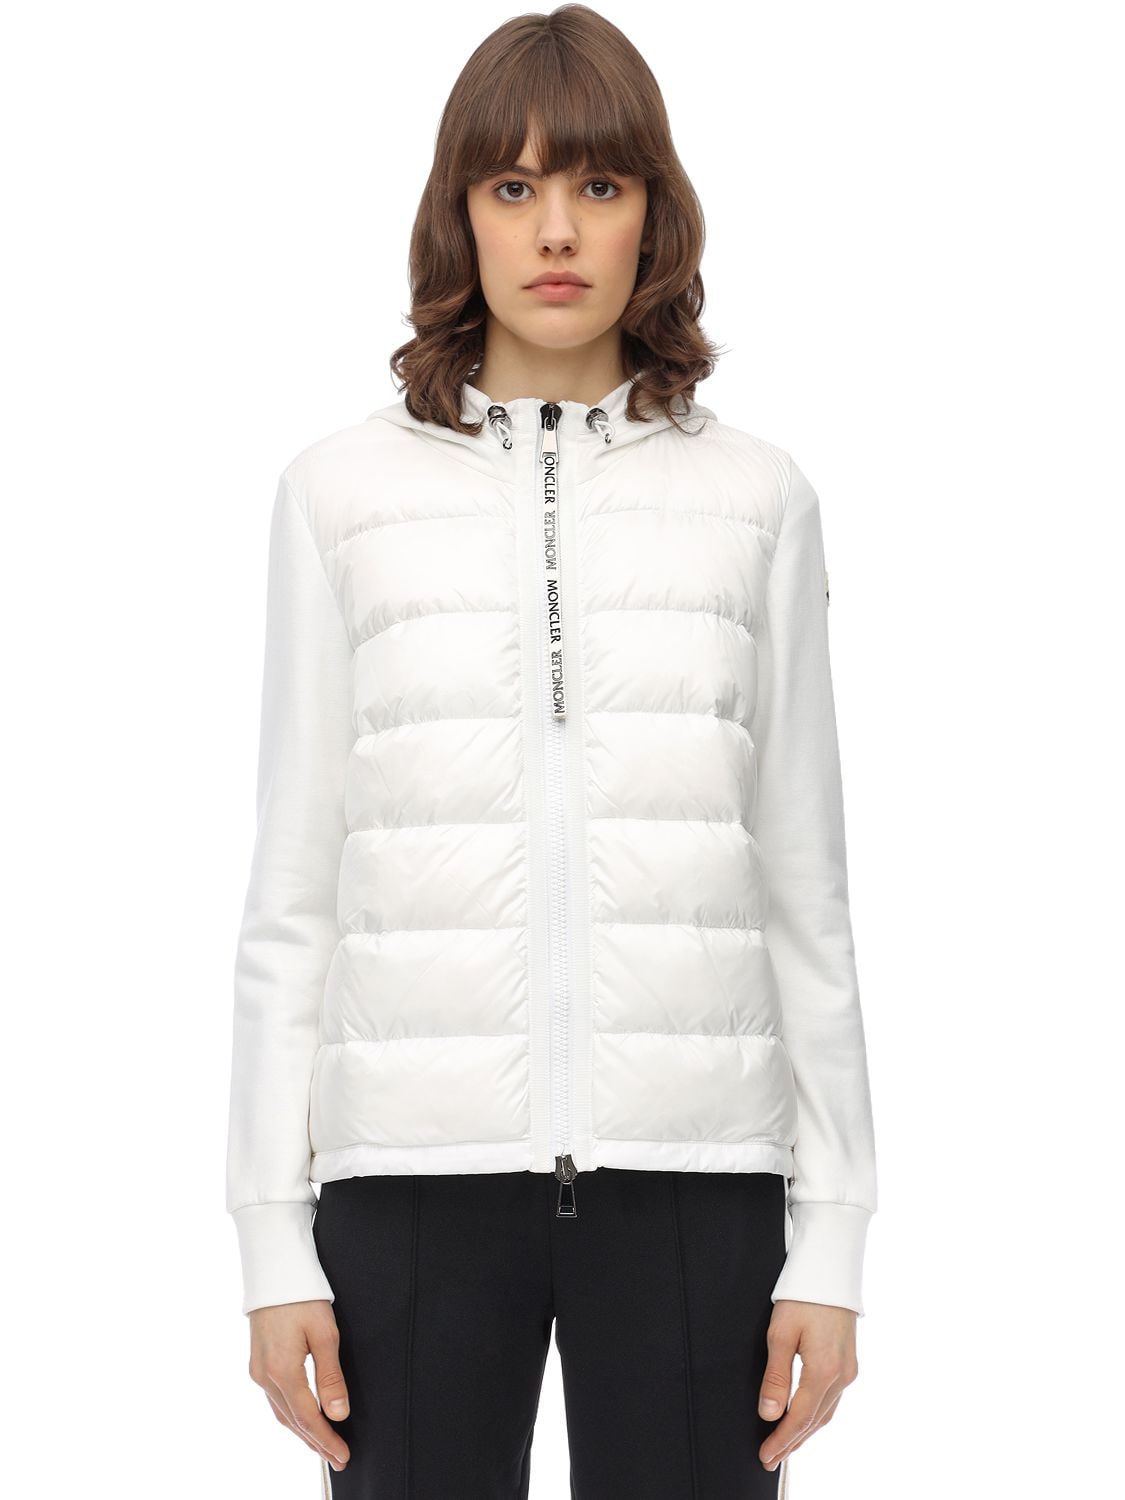 white knit jacket